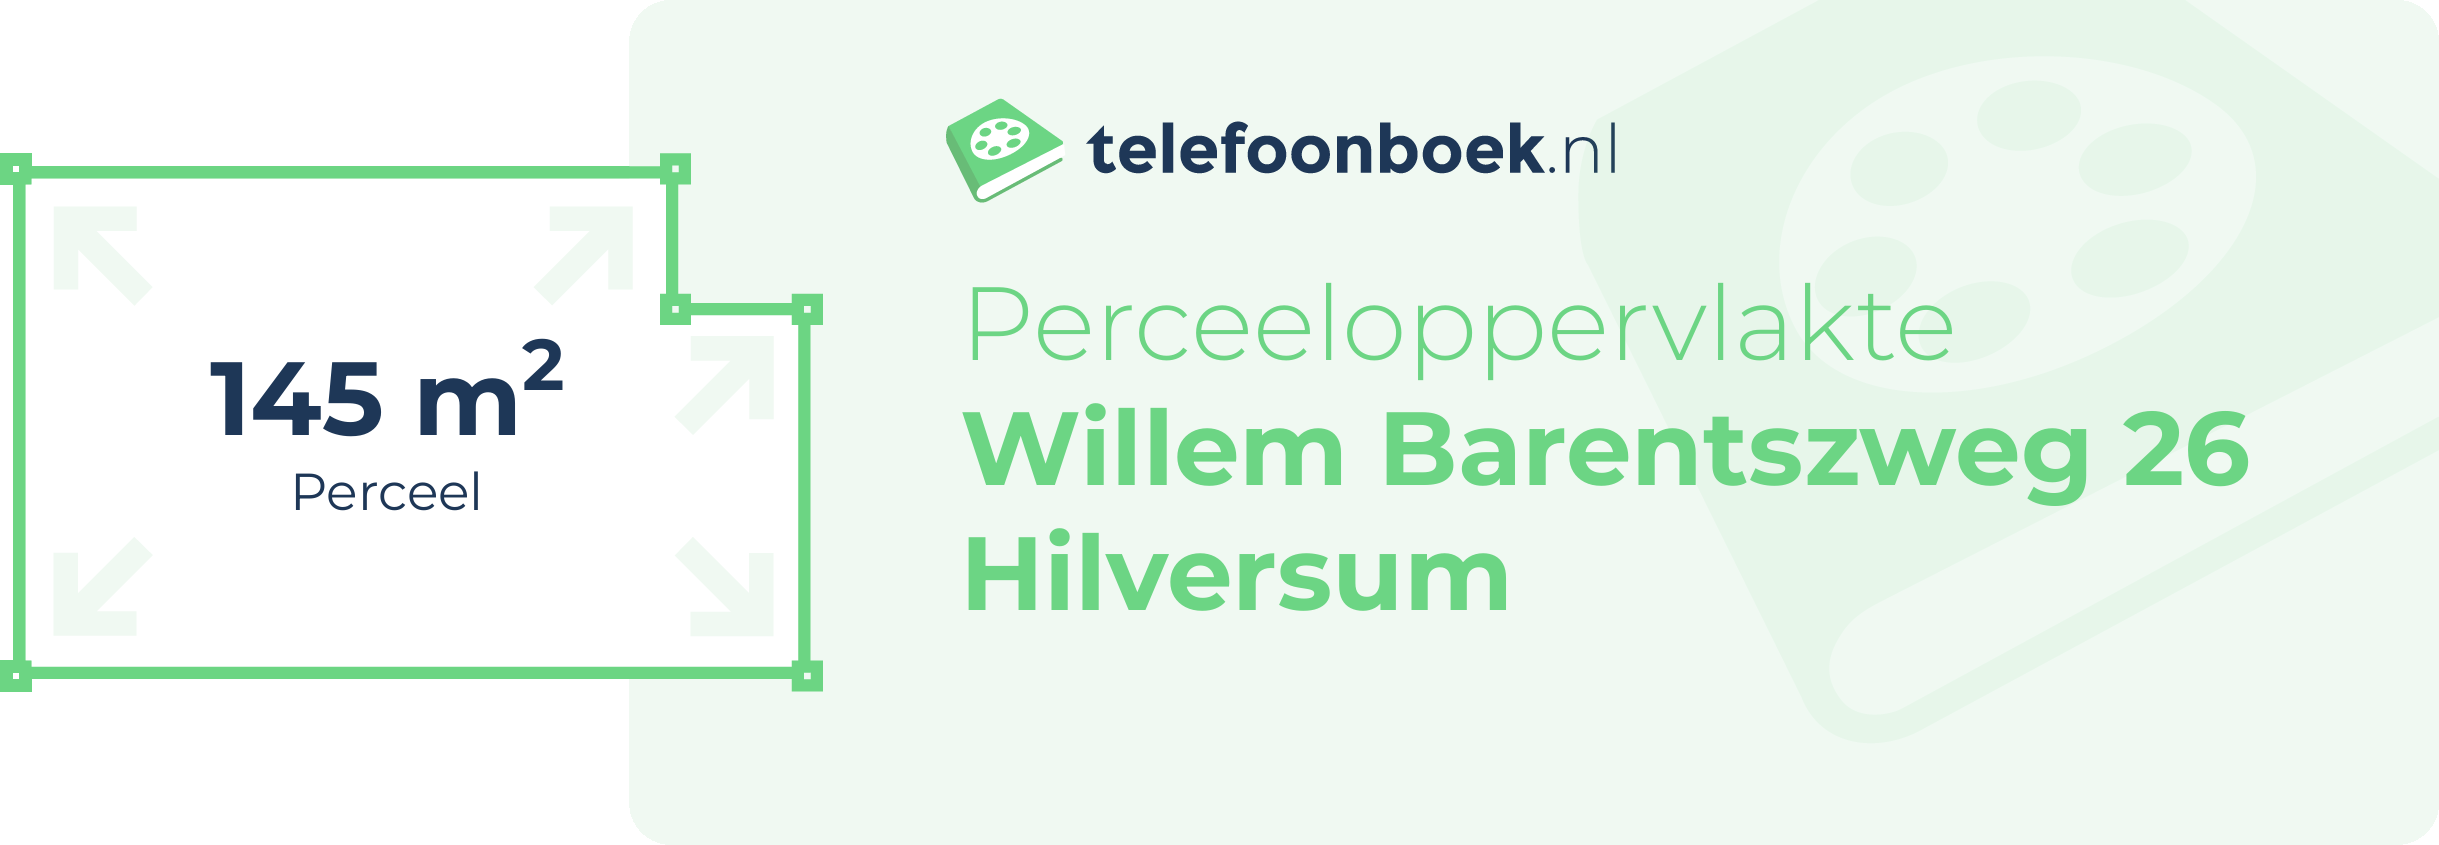 Perceeloppervlakte Willem Barentszweg 26 Hilversum